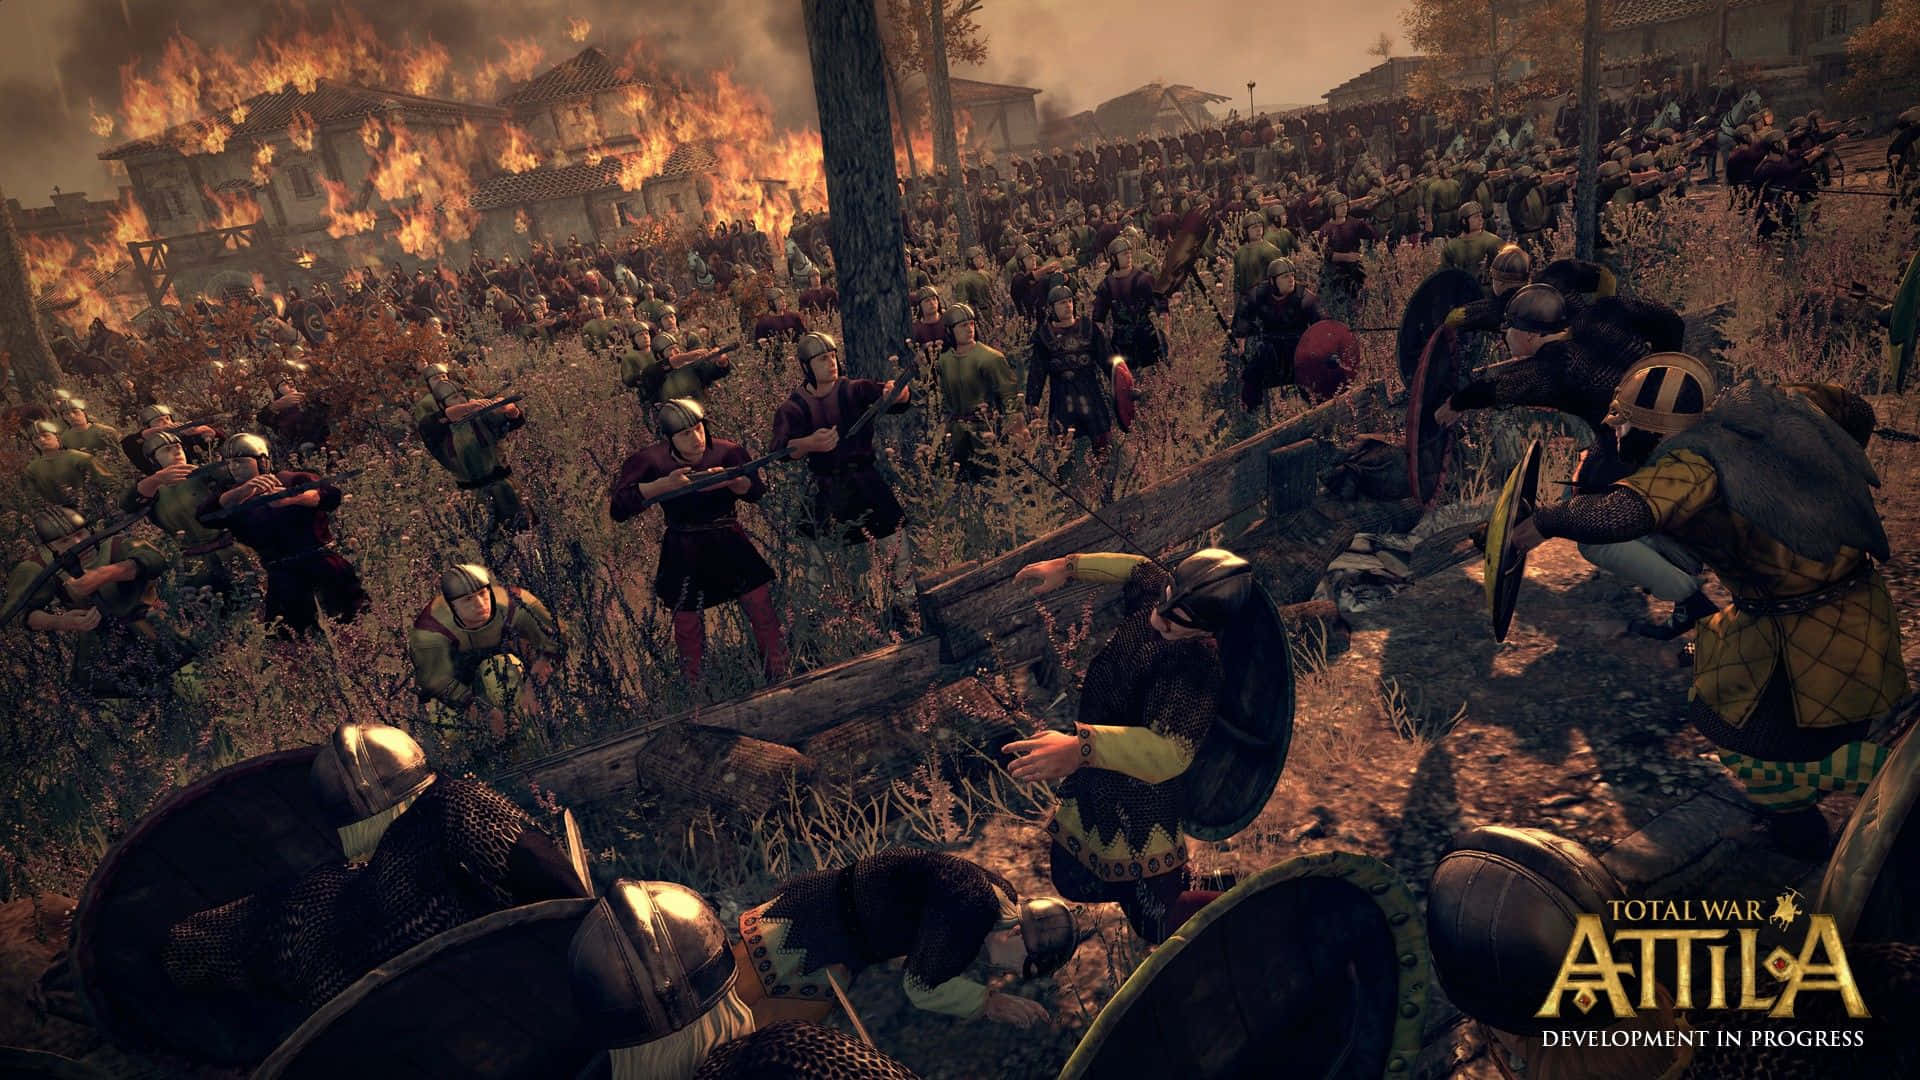 Unacaptura De Pantalla De Una Batalla Entre Romanos Y Un Grupo De Soldados. Fondo de pantalla